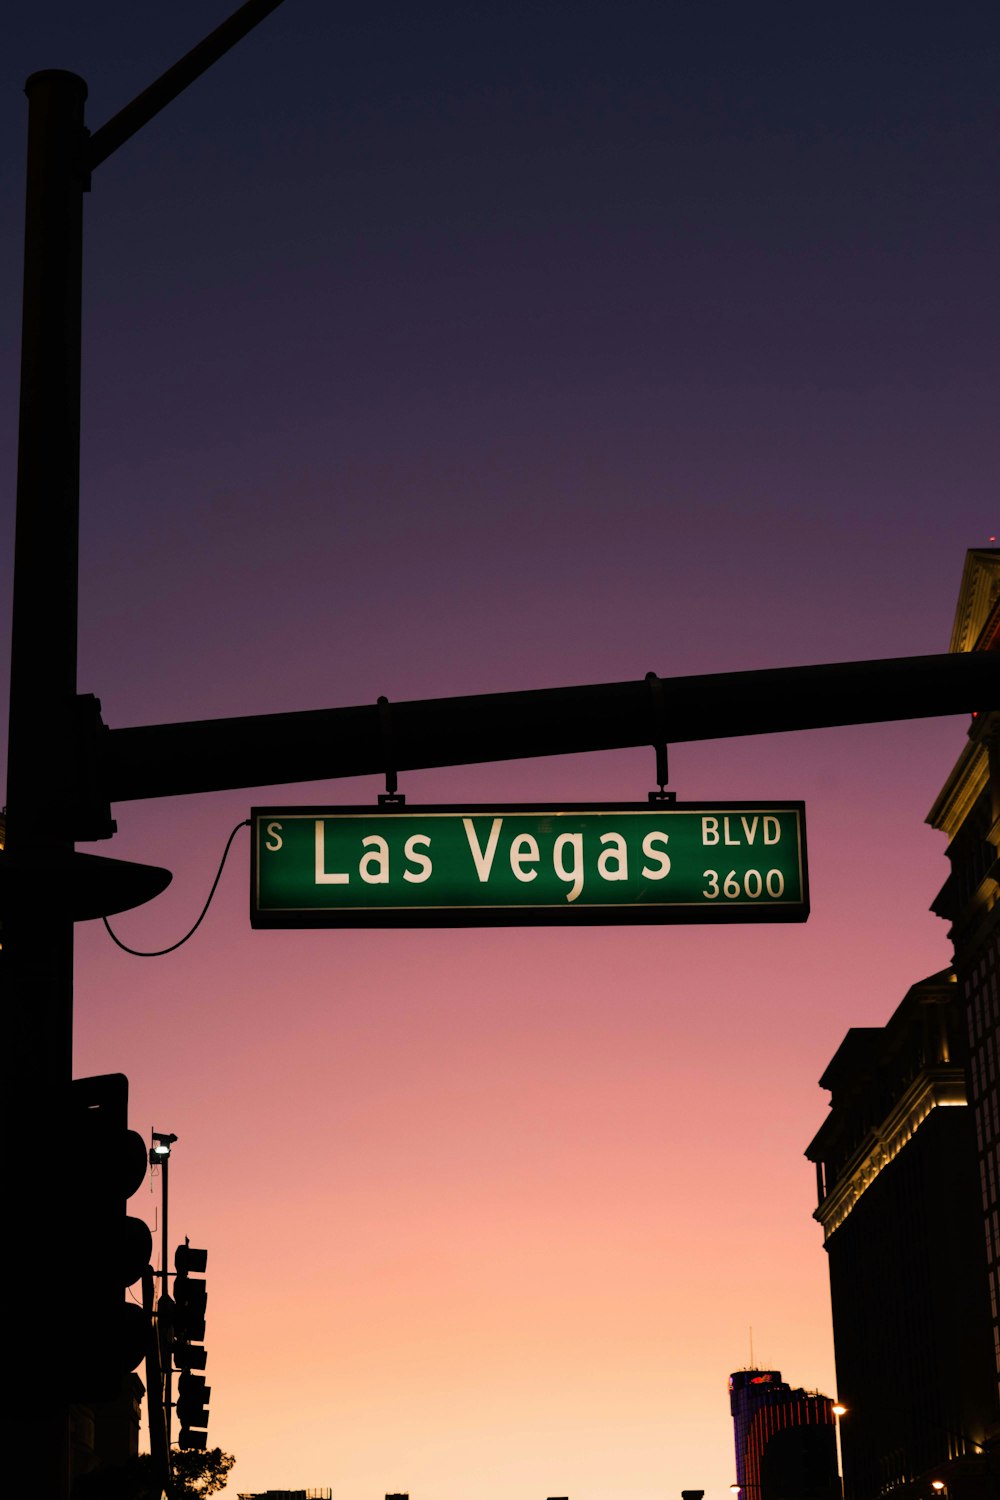 Las Vegas Boulevard 3600 road sign